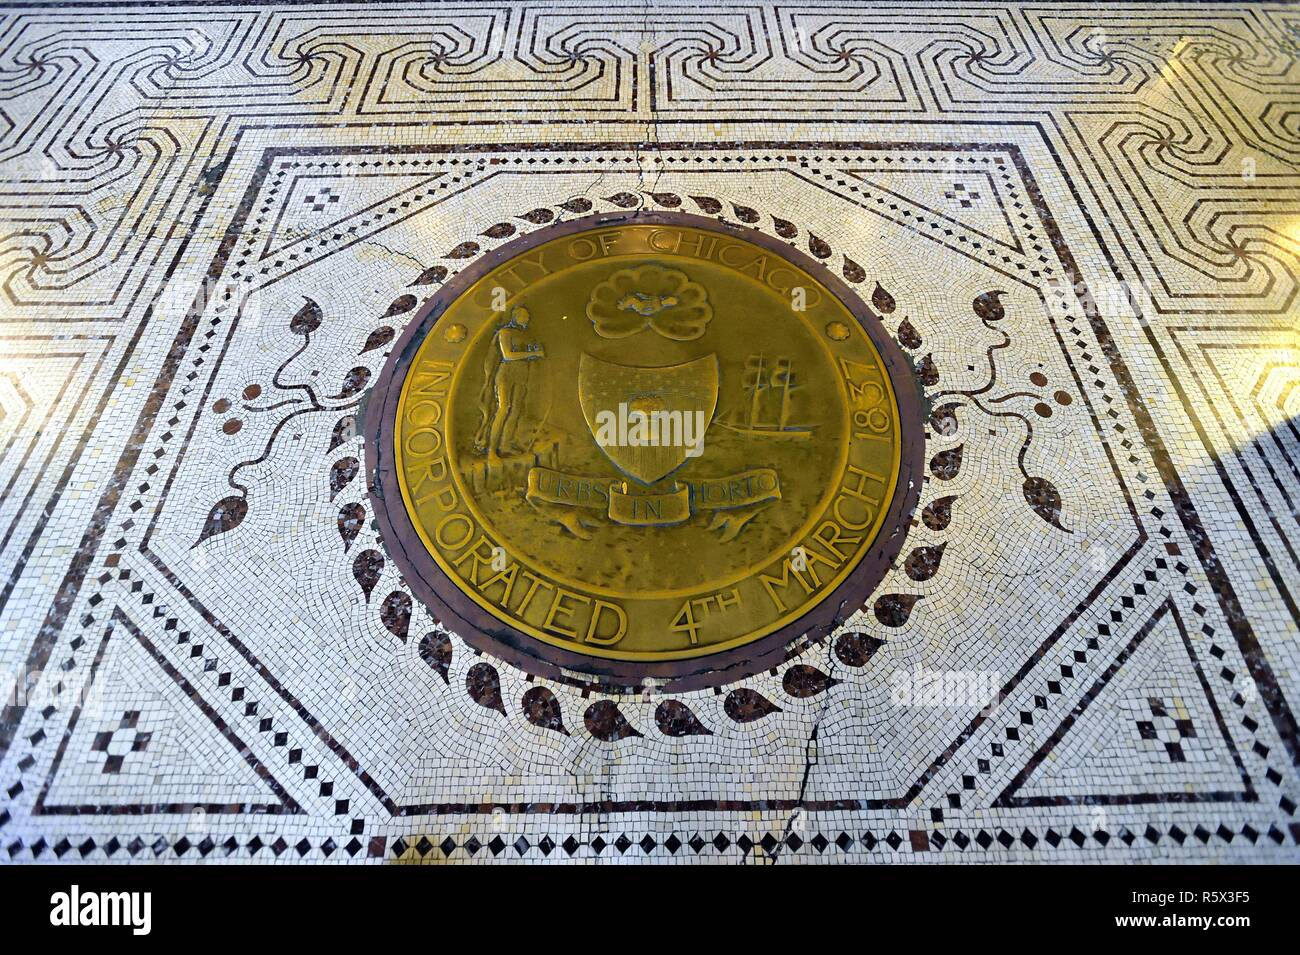 Chicago, Illinois, USA. Carreaux incrustés, détaillée qui inclut un sceau de la ville de Chicago, à proximité d'une entrée du Centre culturel de Chicago. Banque D'Images